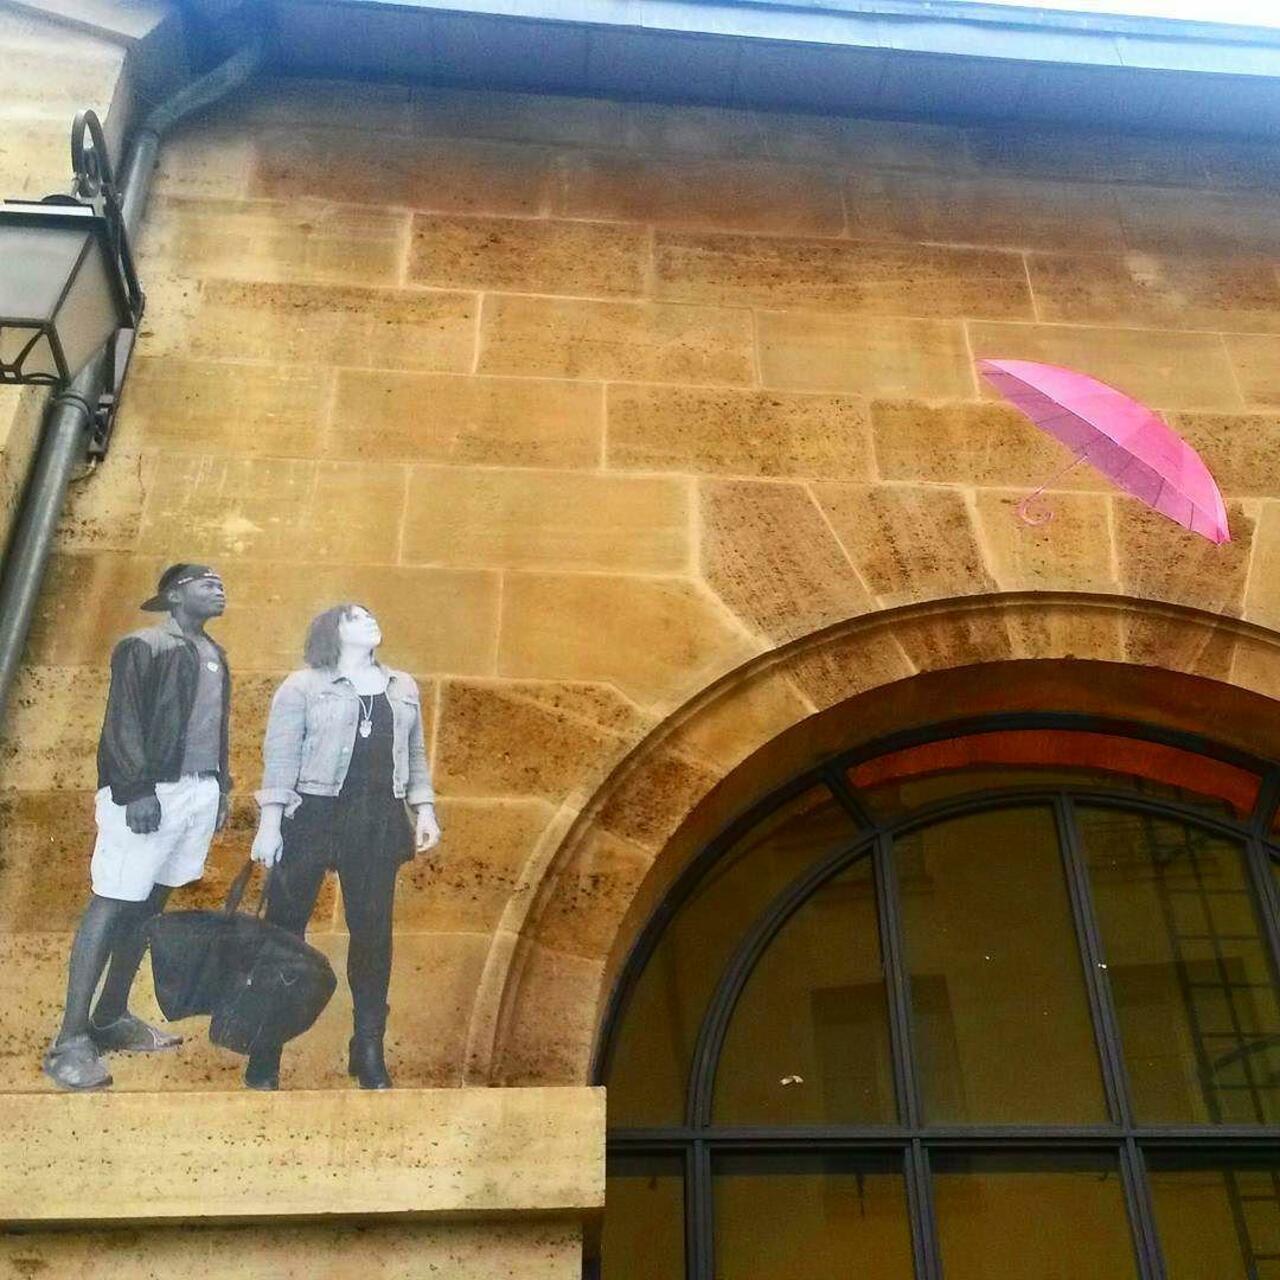 circumjacent_fr: #Paris #graffiti photo by princessepepett http://ift.tt/1Ptbh7g #StreetArt https://t.co/ZXTPGnt7rx